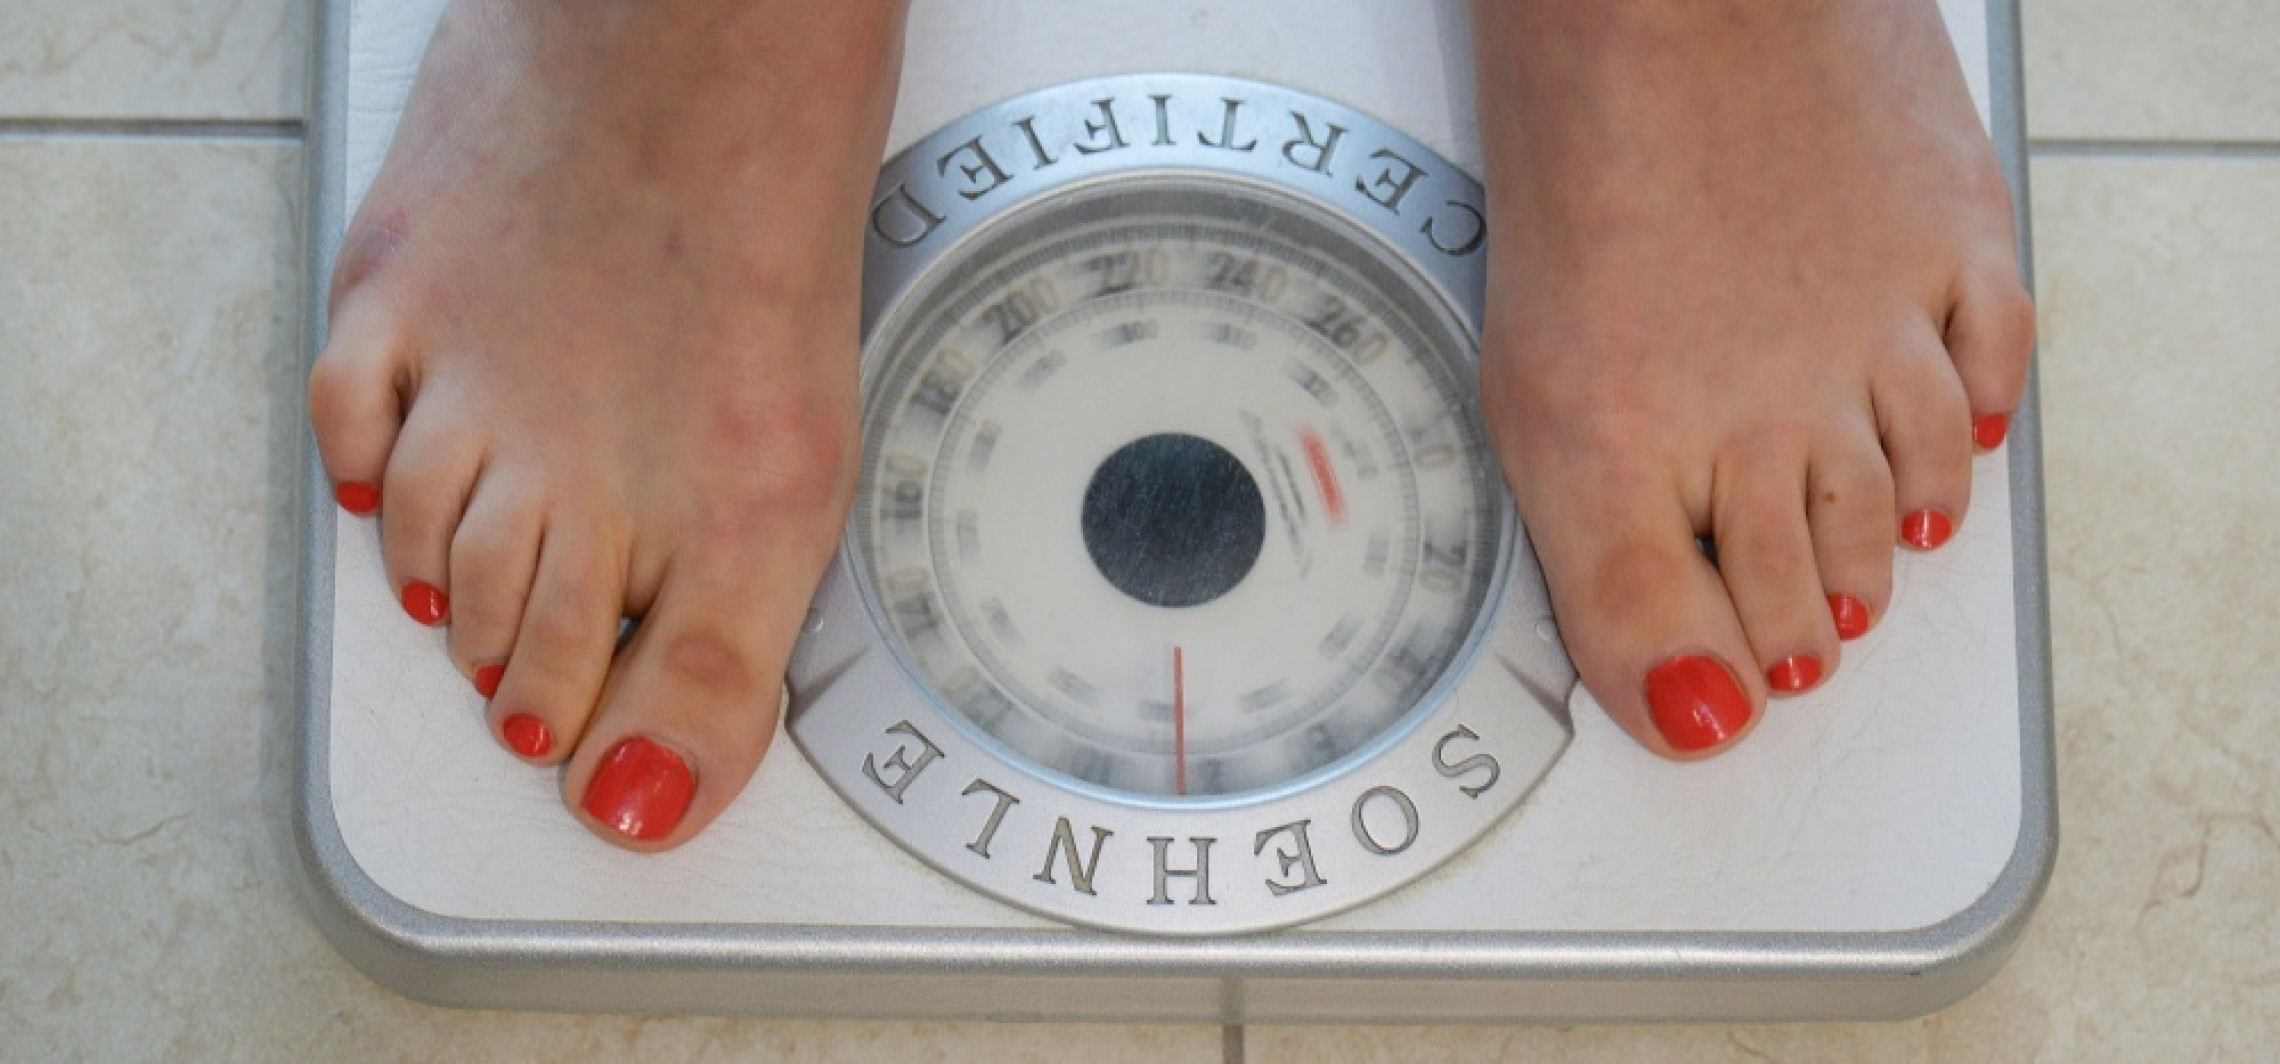 Kraj - Co drugi Polak ma nadwagę lub jest otyły, co trzeci aktywny fizycznie